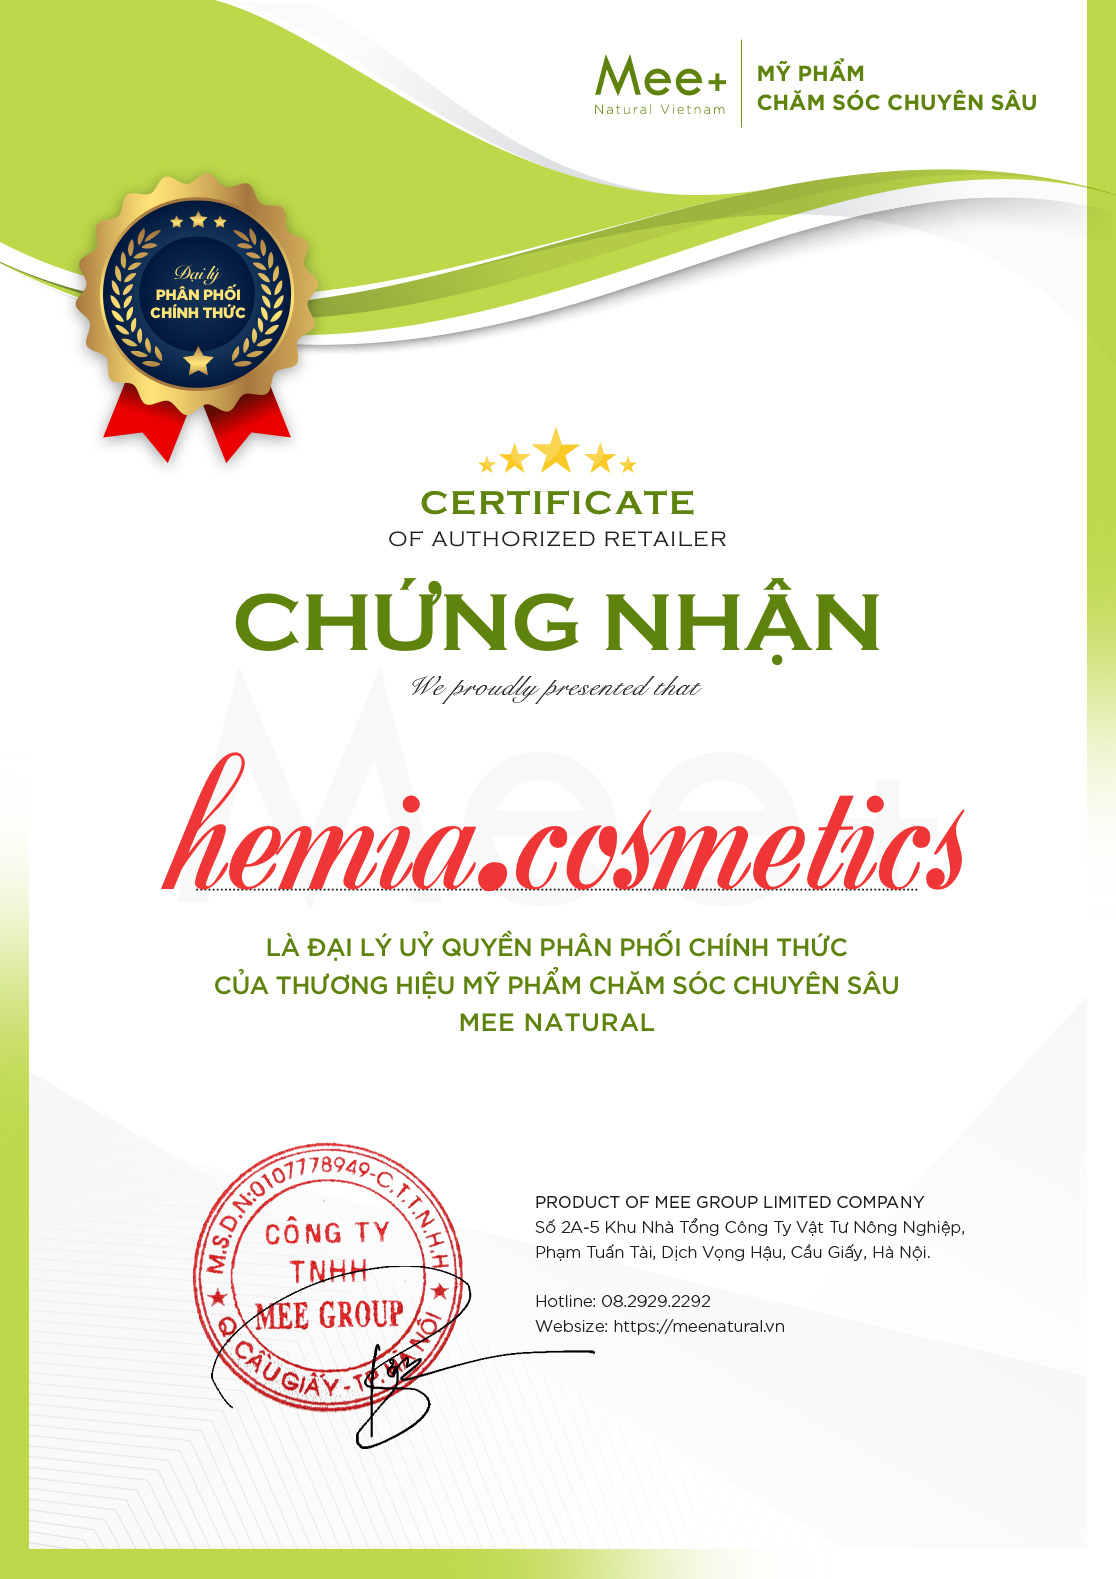 Chào mừng Hemia.cosmetics trở thành đại lý bán hàng chính thức của Mee Natural